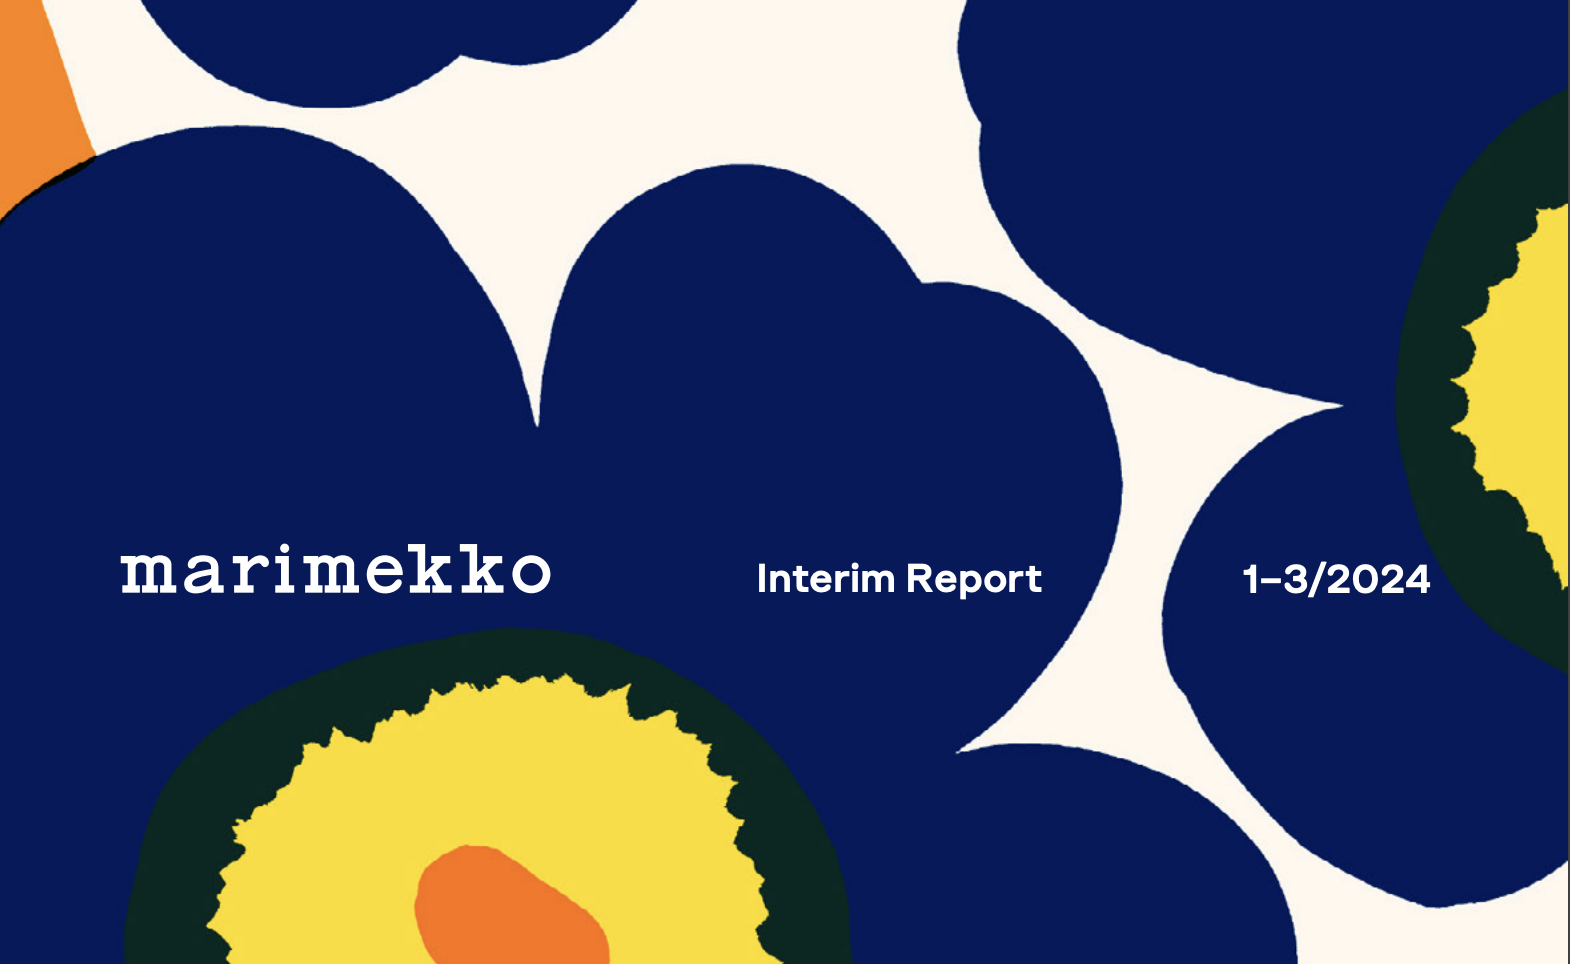 芬兰时尚生活方式品牌 Marimekko 一季度销售额增长7%，亚太区增长22%，是未来几年的关键市场